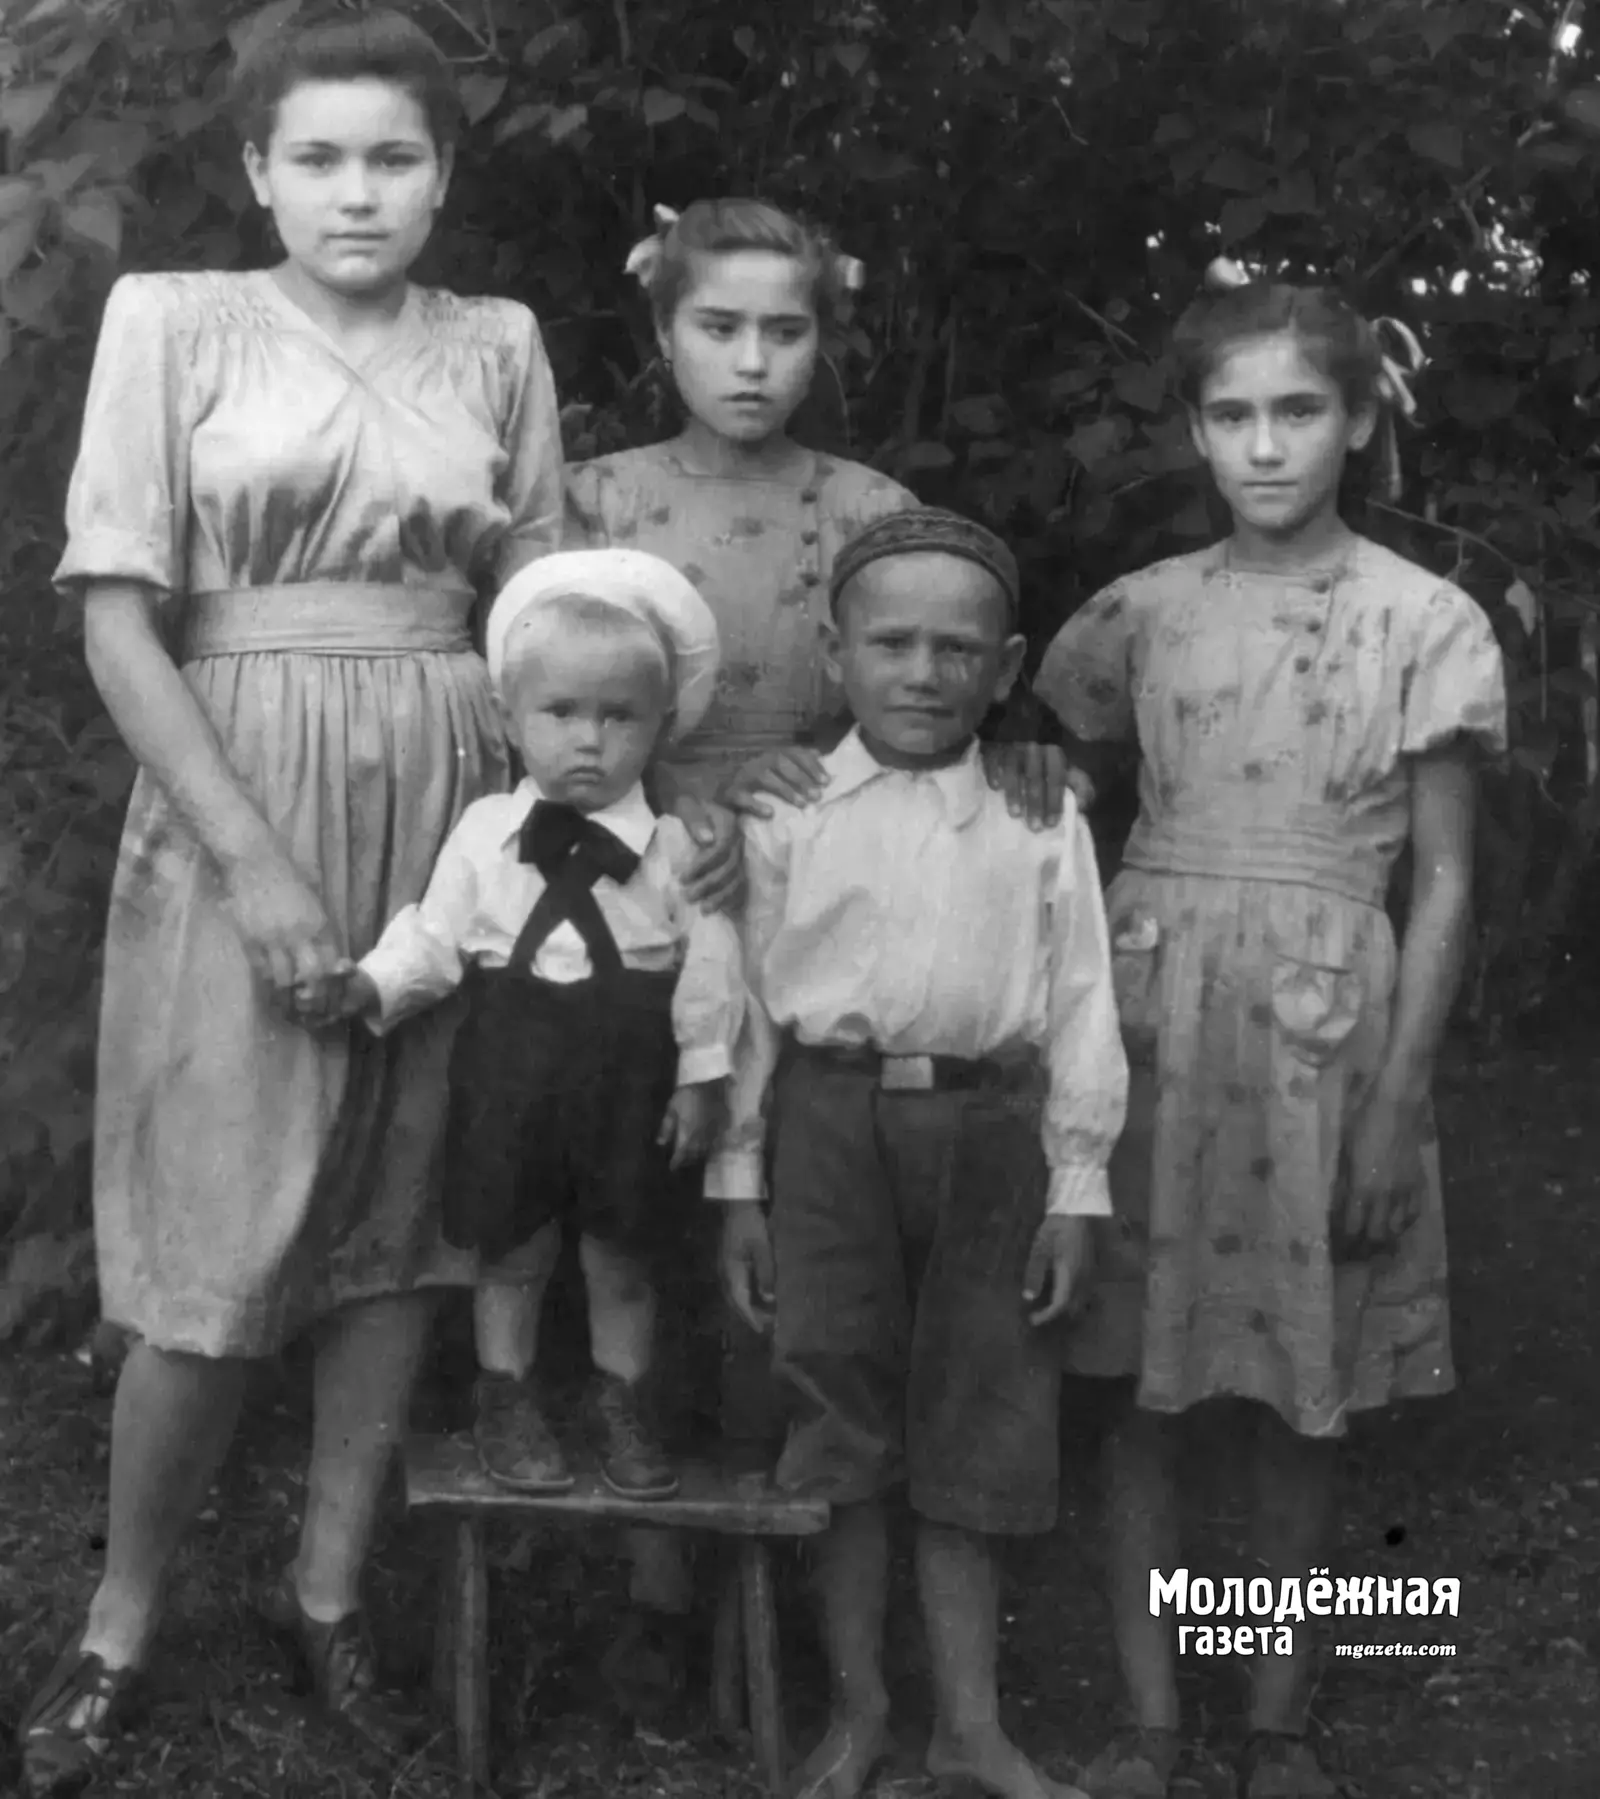 Я самая старшая из детей, слева. Здесь мне 18 лет, это 1949 год. Более ранних фотографий нет.